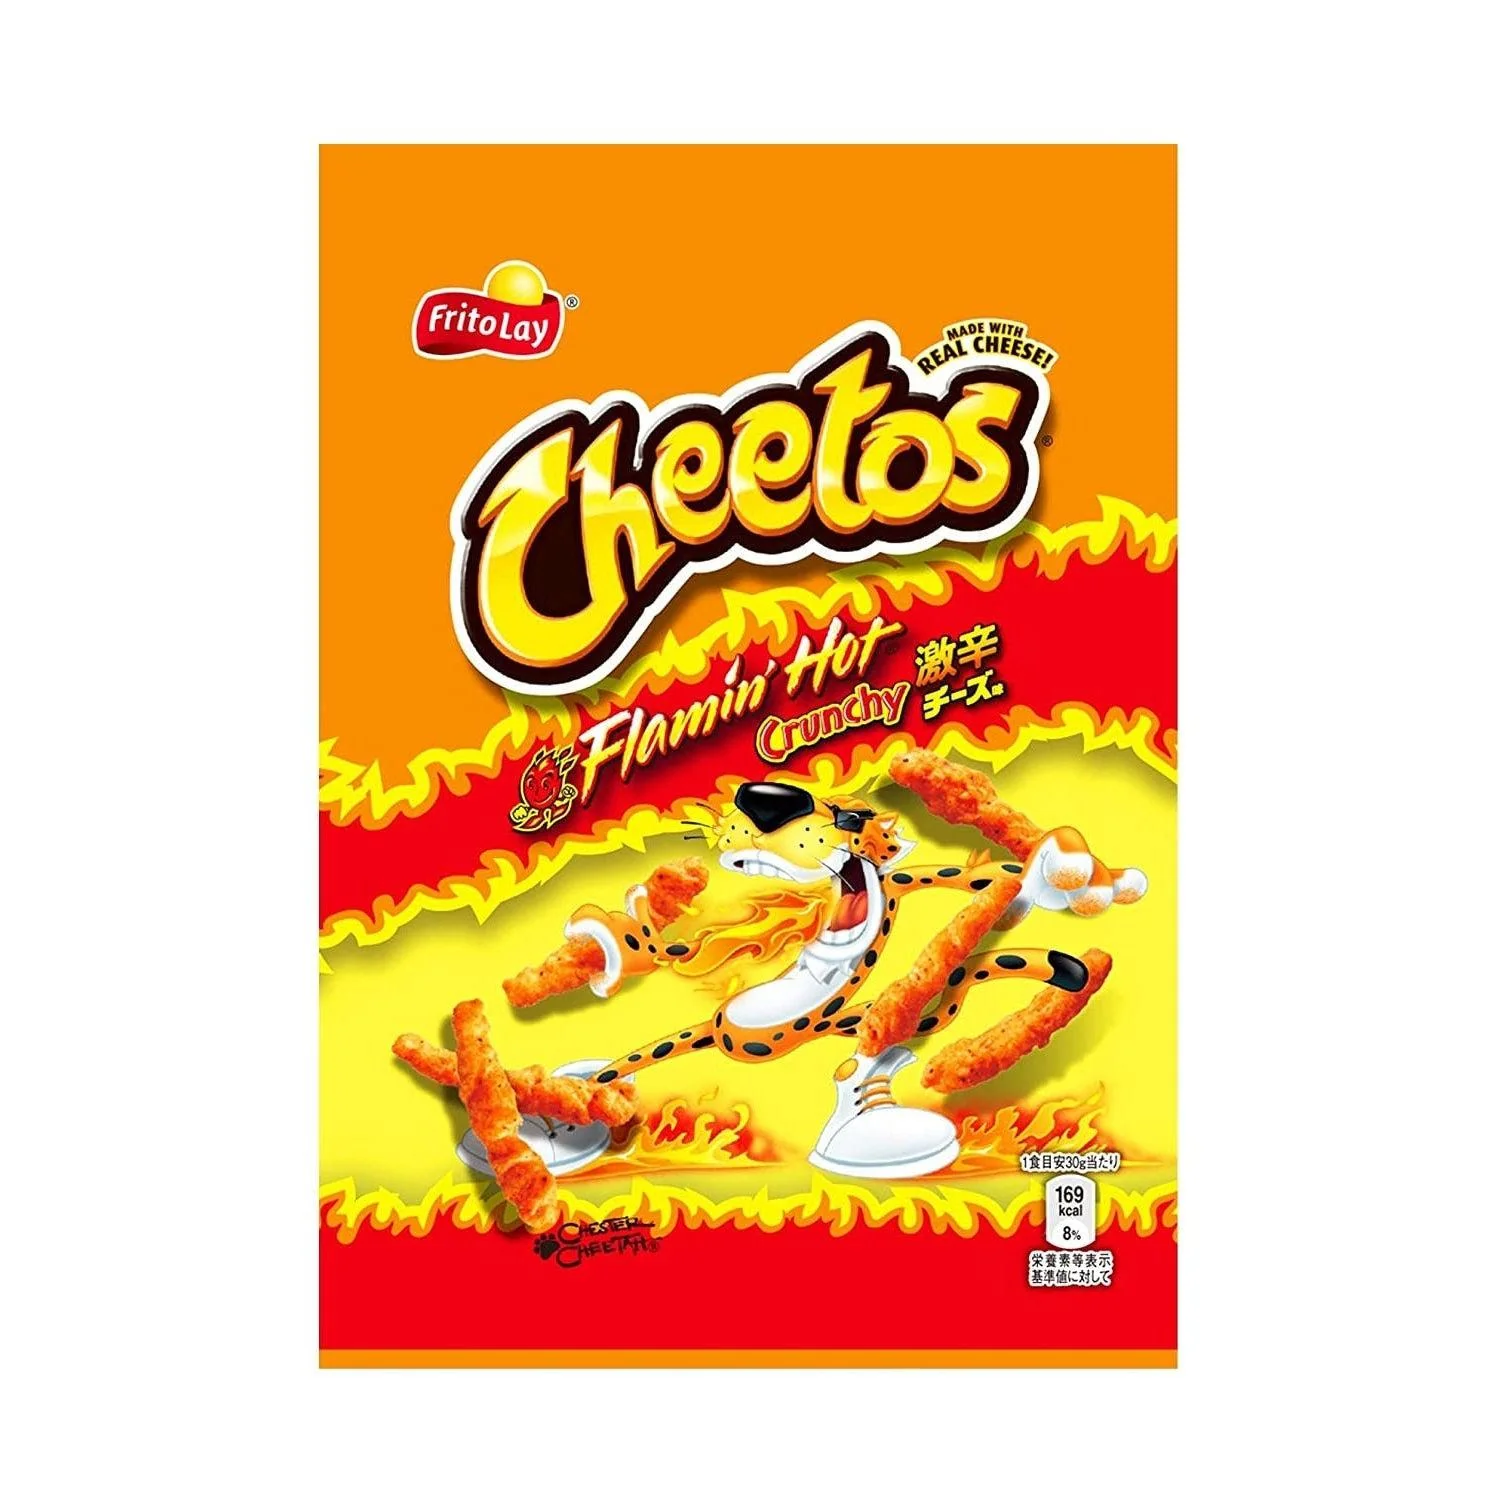 Japan Cheetos Crunchy